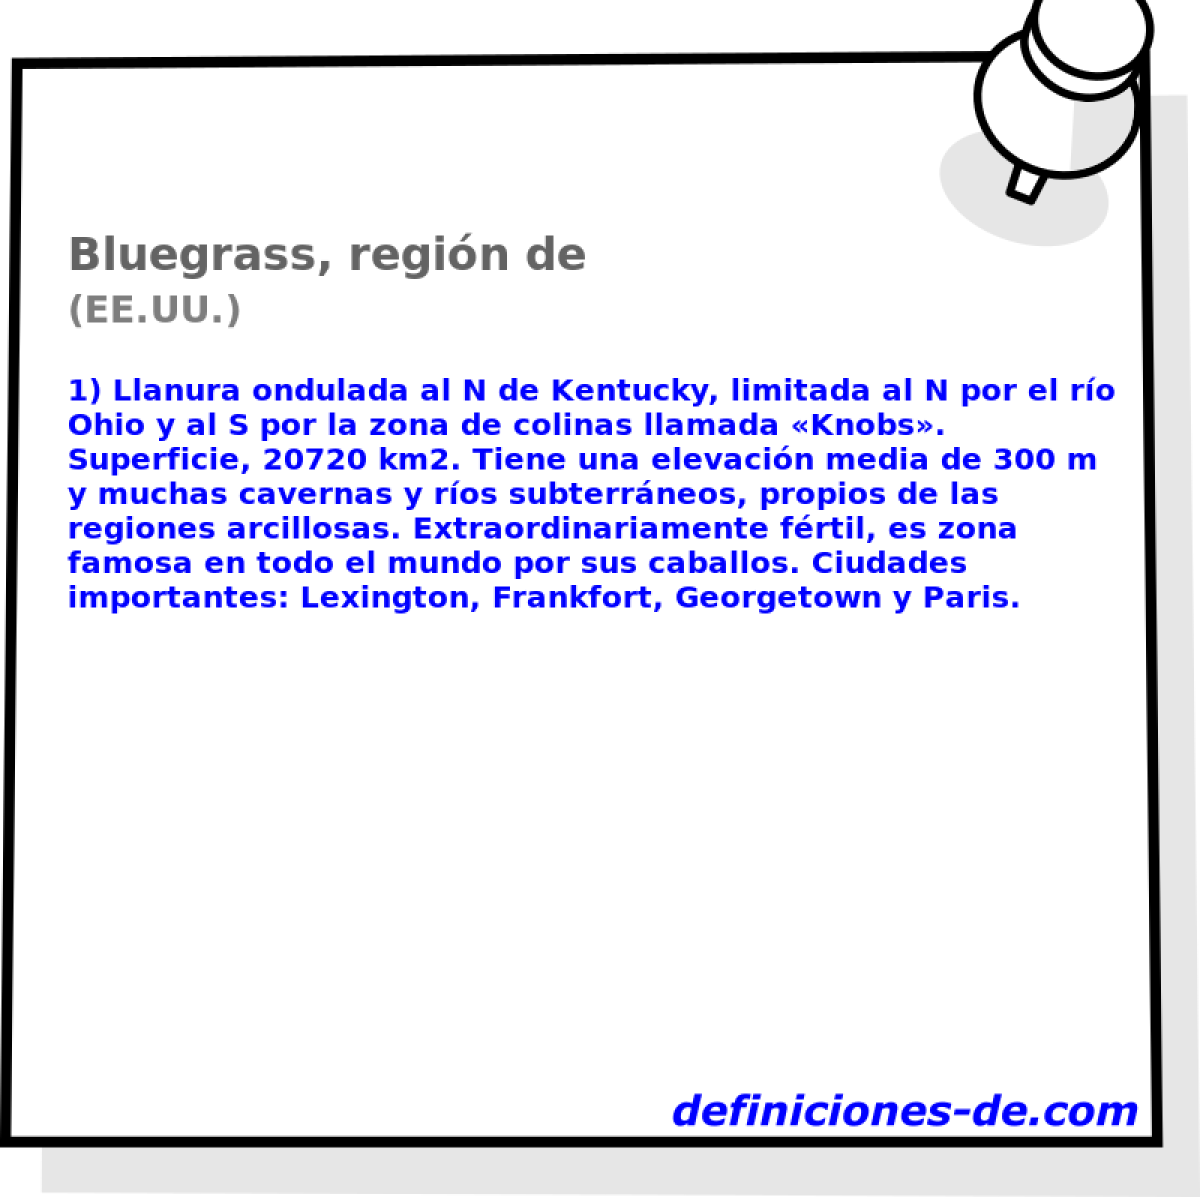 Bluegrass, regin de (EE.UU.)